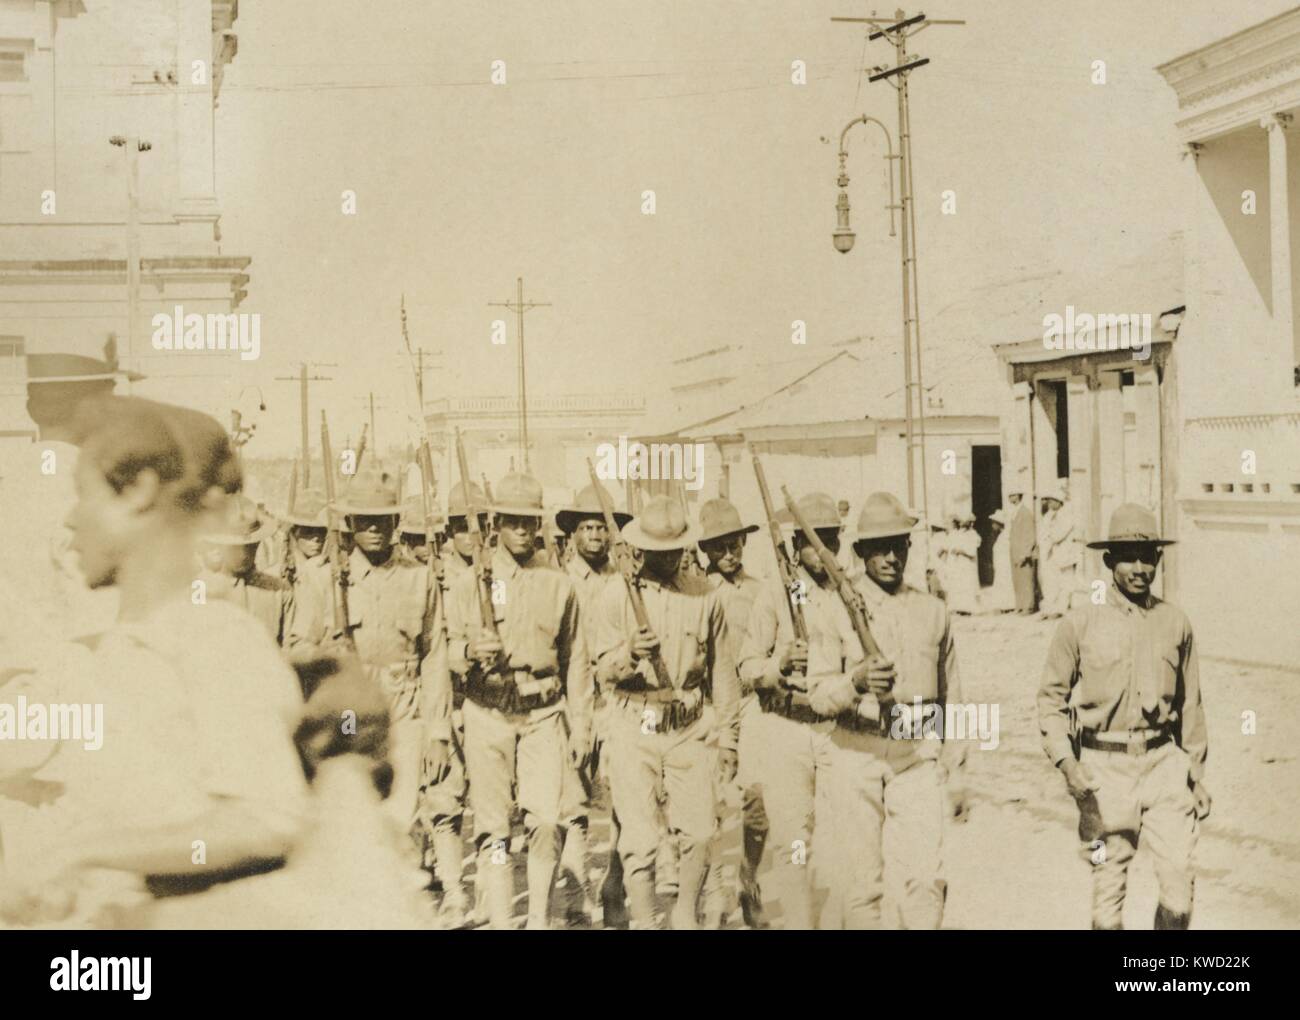 Afrikanische amerikanische Soldaten marschieren Straße die Springfield Rifles, C. 1903. Die Lage der Parade ist unbekannt. Das Dienstprogramm Linien zeigen eine wohlhabende Stadt, die möglicherweise in den westlichen Vereinigten Staaten (BSLOC 2017 20 105) Stockfoto